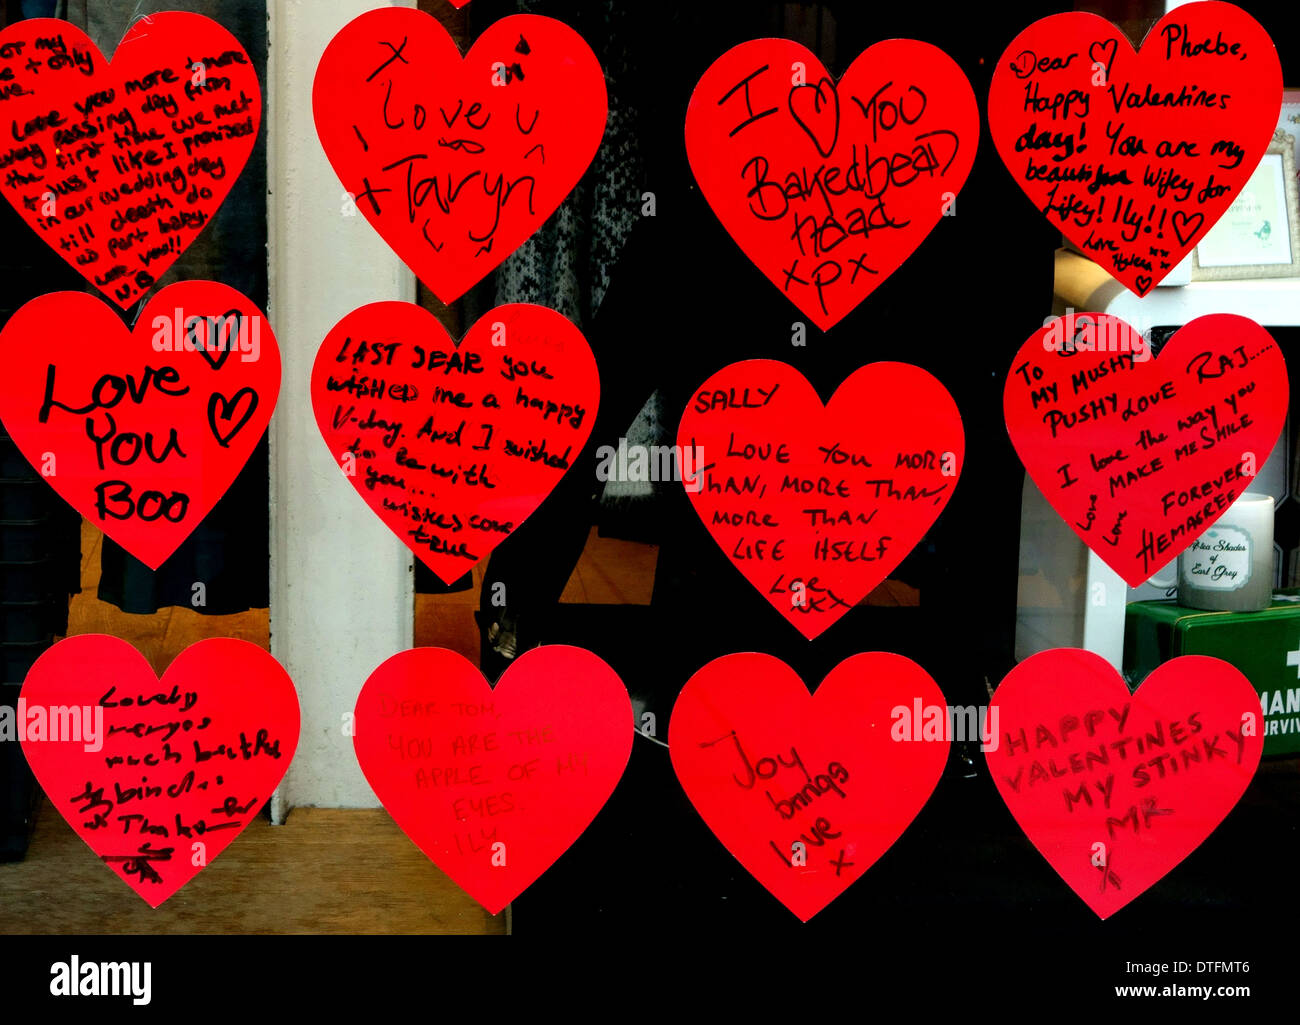 La Saint-Valentin dans les messages, affichage de vitrine London Banque D'Images